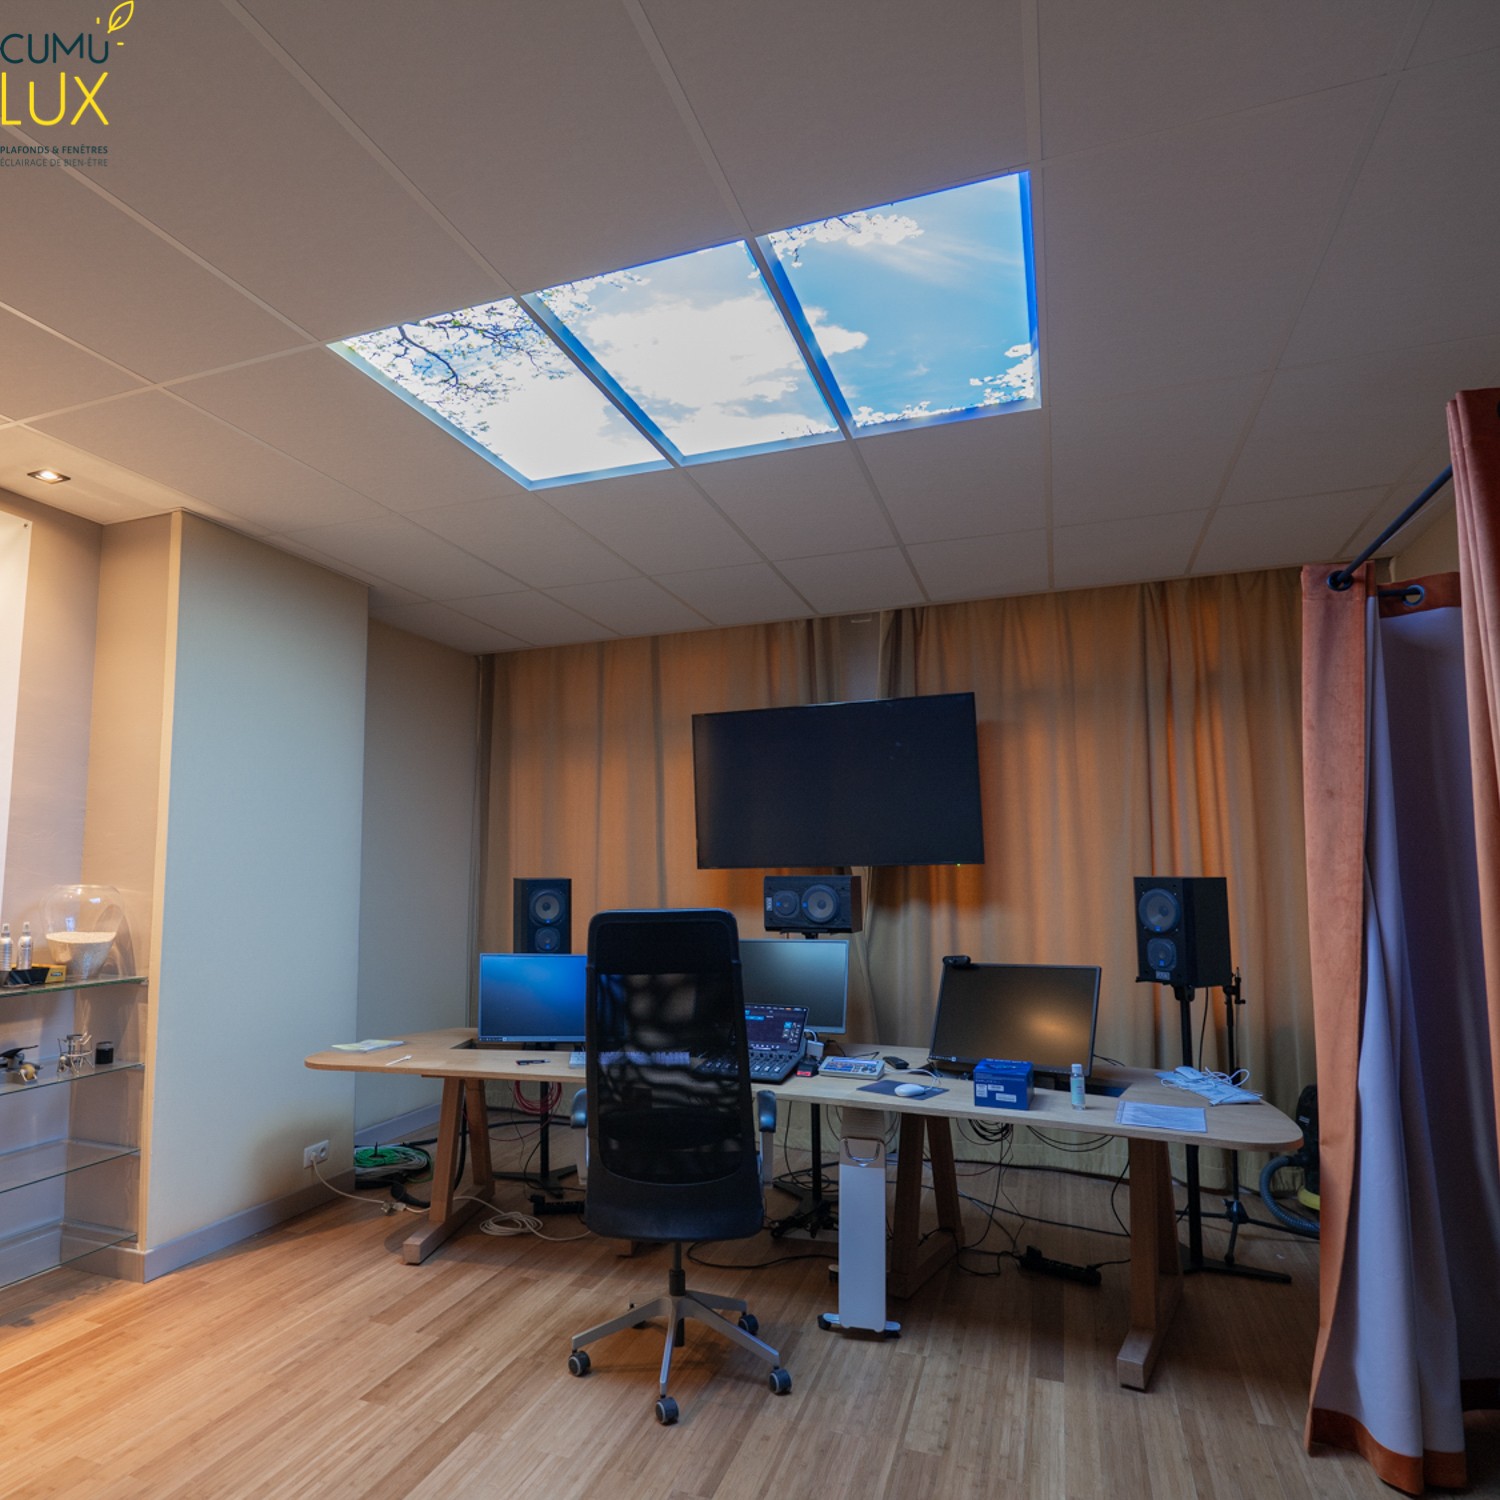 Faux plafond Cumulux de 3 dalles 60x120cm avec une vue sur le ciel pour un studio d'enregistrement aveugle.